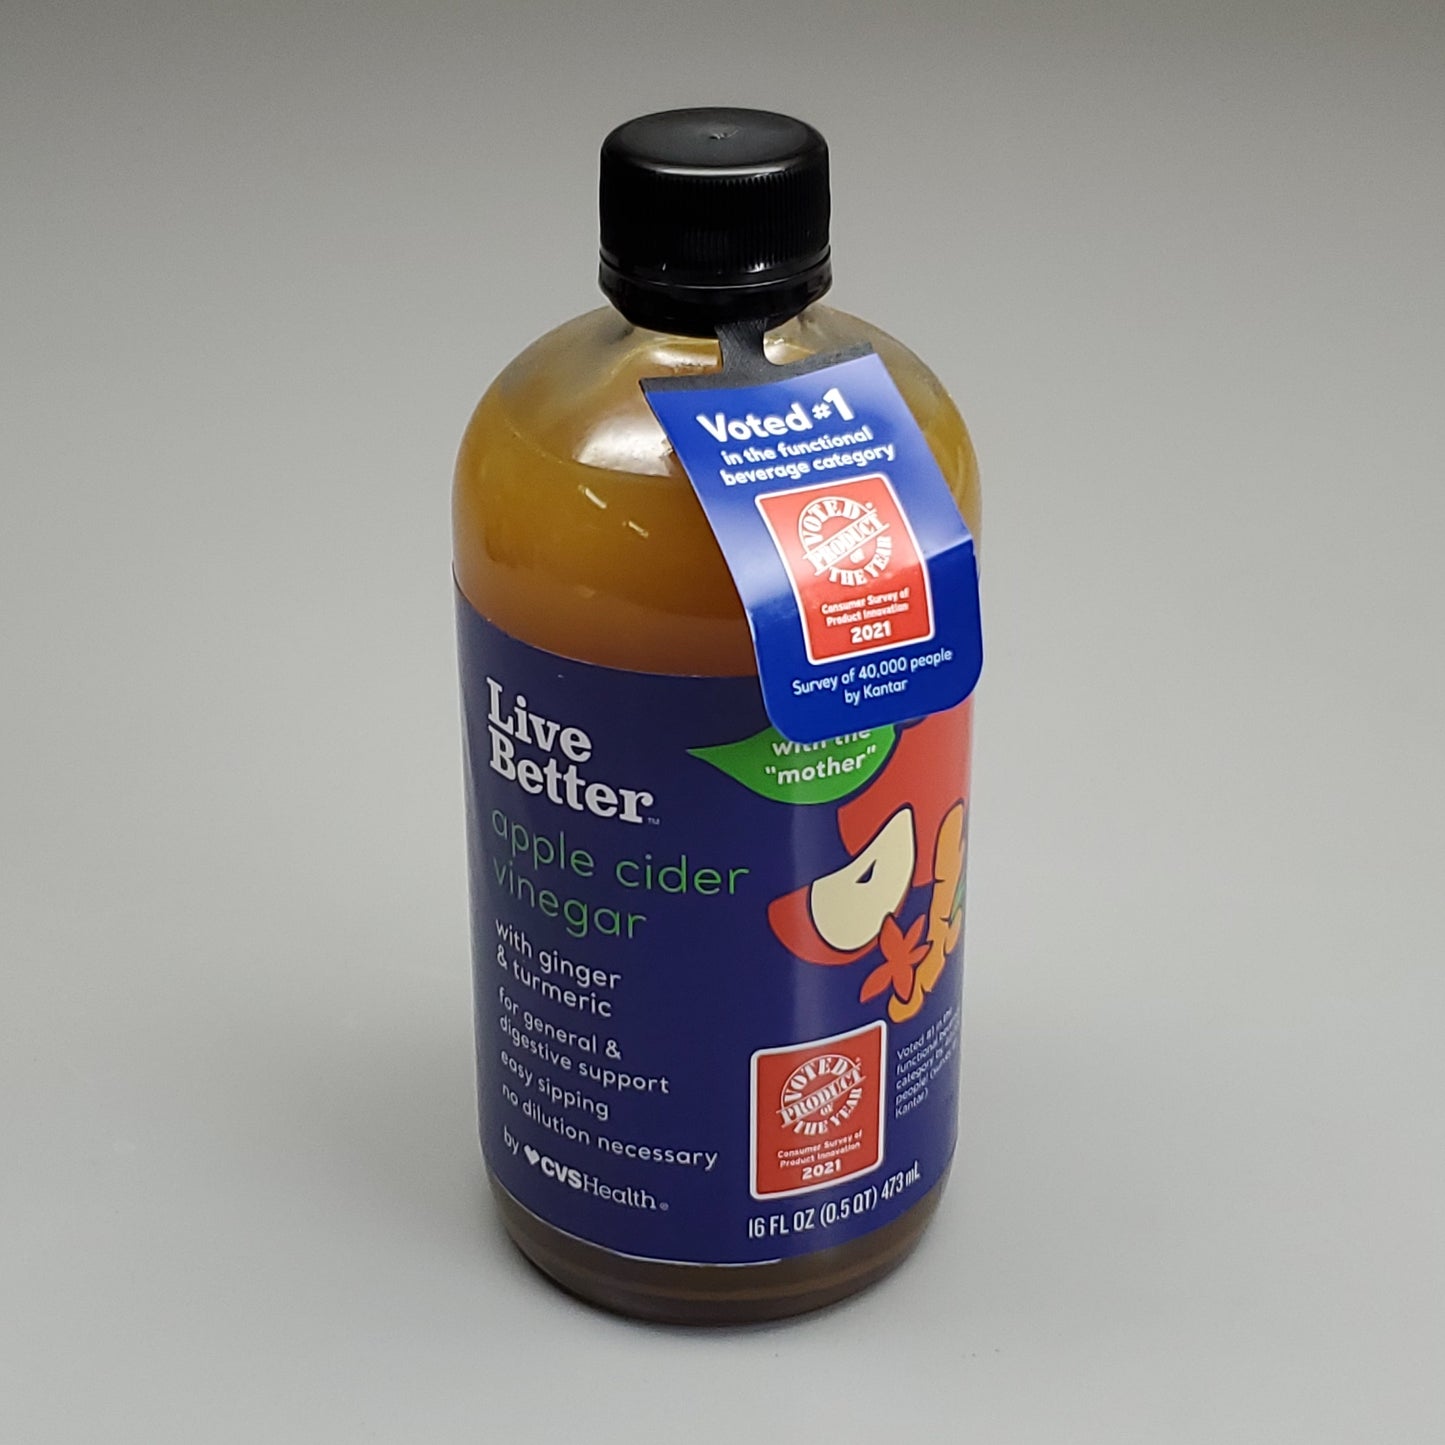 ZA@ CVS HEALTH Live Better Apple Cider Vineagar w/ Ginger Turmeric Case 4 bottles 16 fl oz (New) A